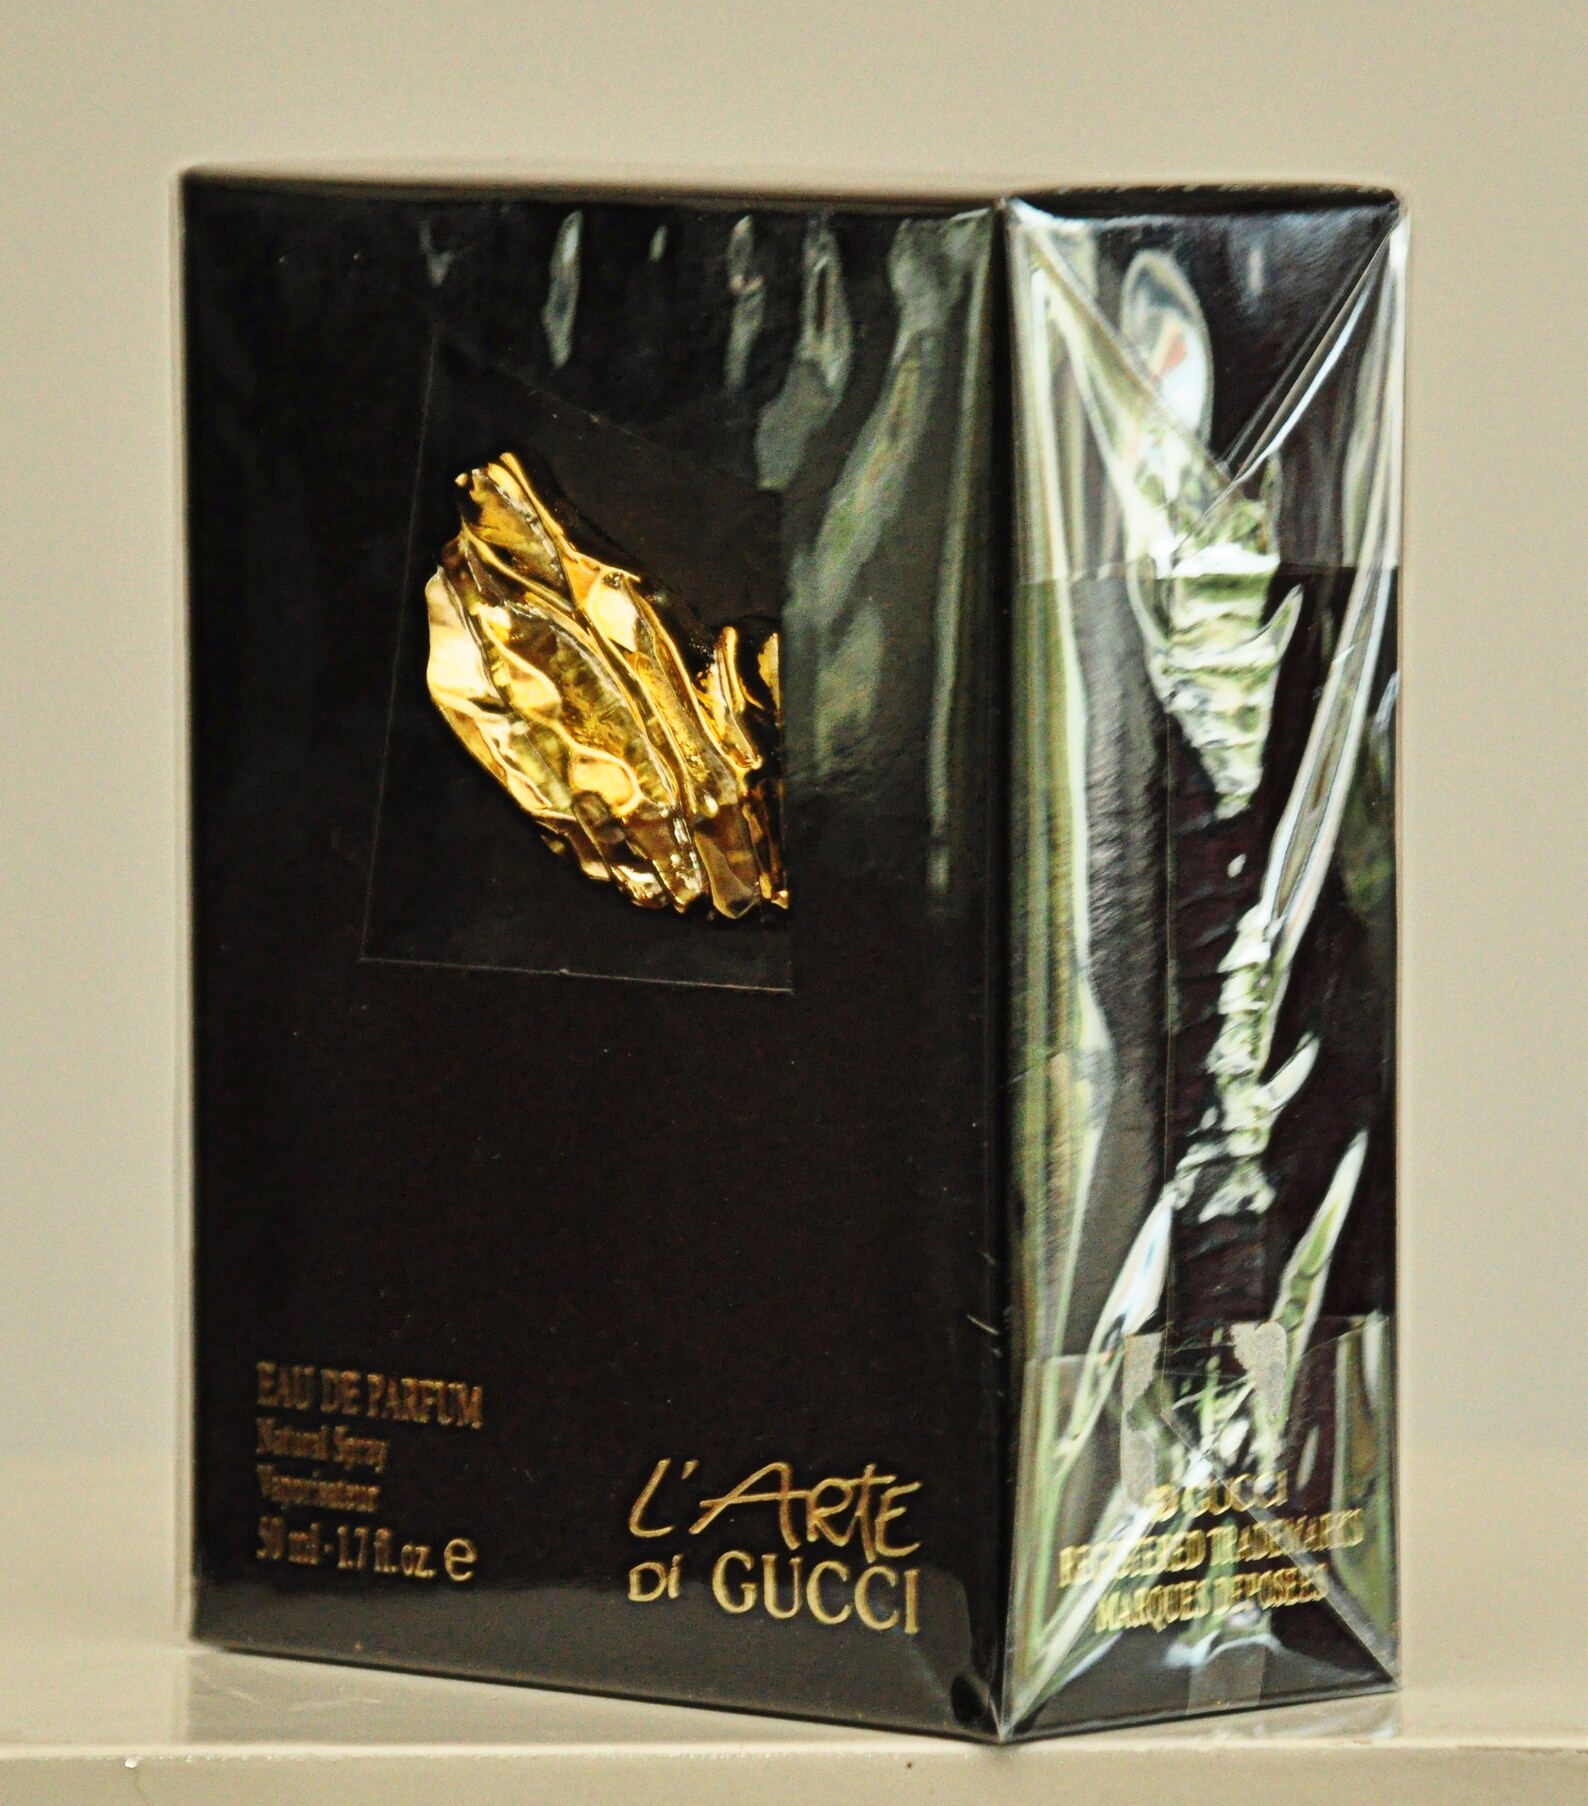 Gucci L'arte Di Gucci Eau De Parfum Edp 50ml 1.7 Fl. Oz. - Etsy